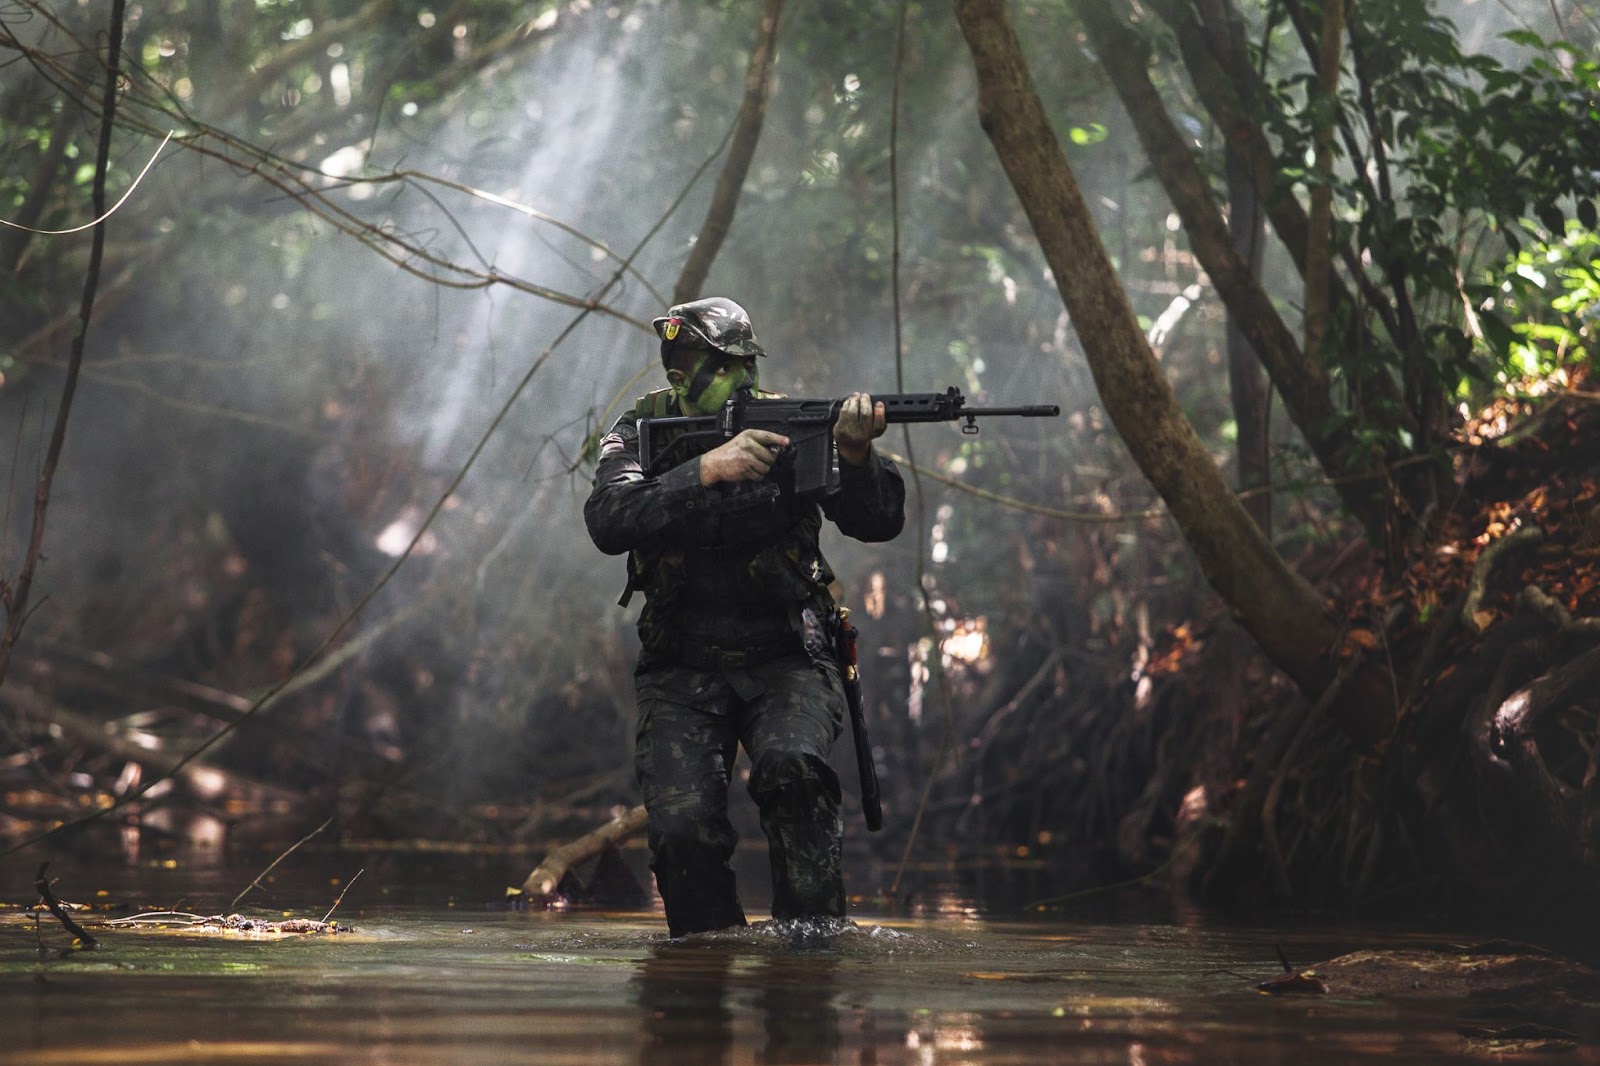 Floresta equatorial: confira sobre o assunto cobrado nas provas militares